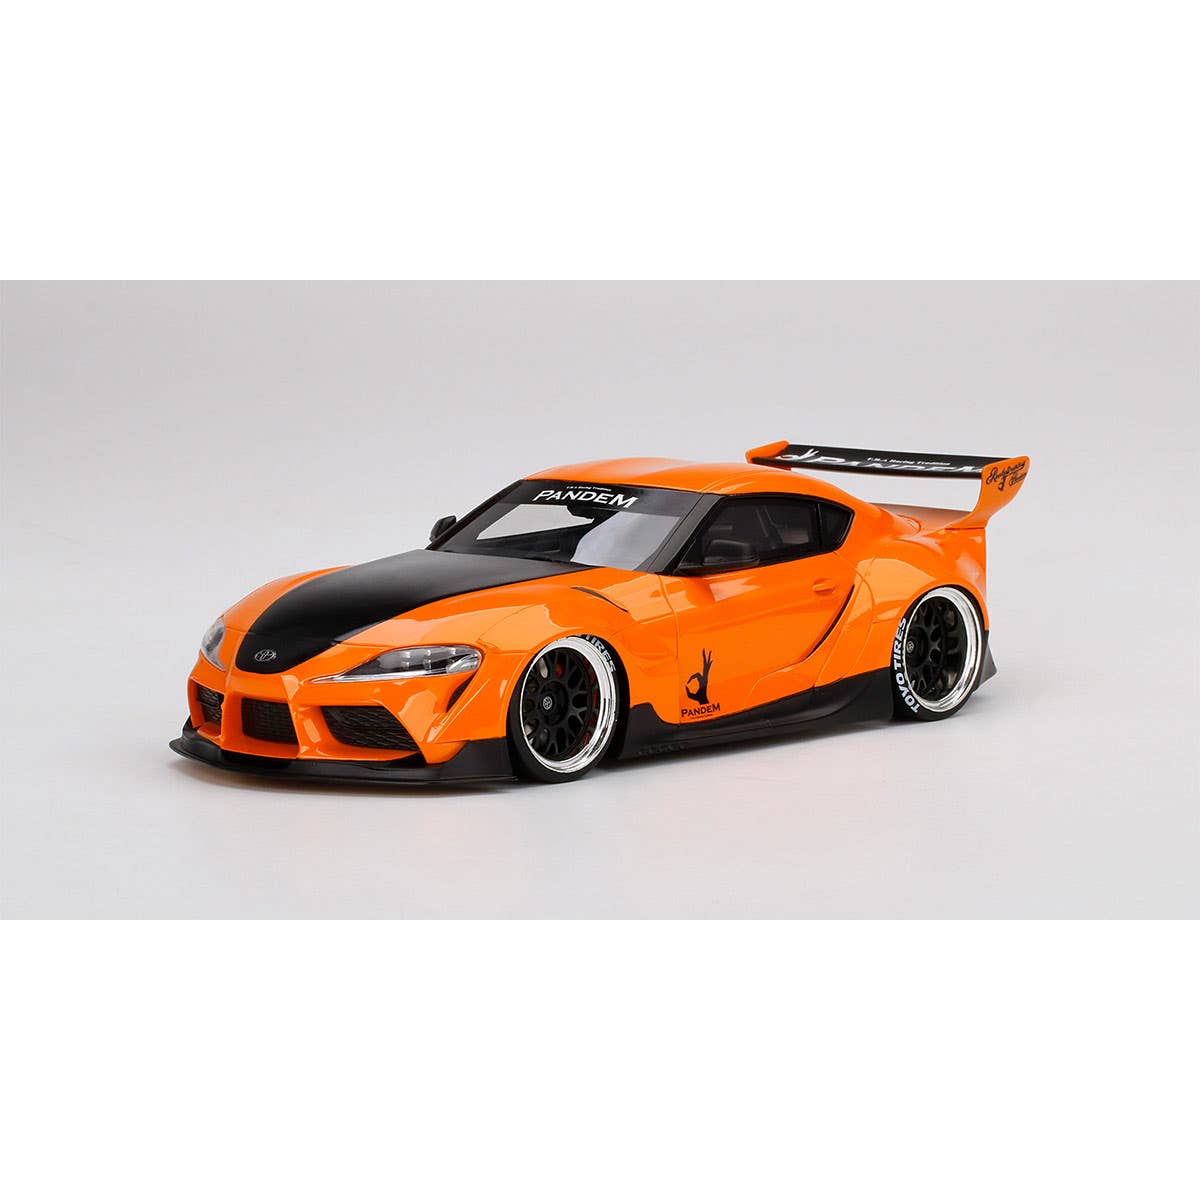 Pandem Toyota GR Supra V1.0 Orange - 1:18 Scale Resin Model Car